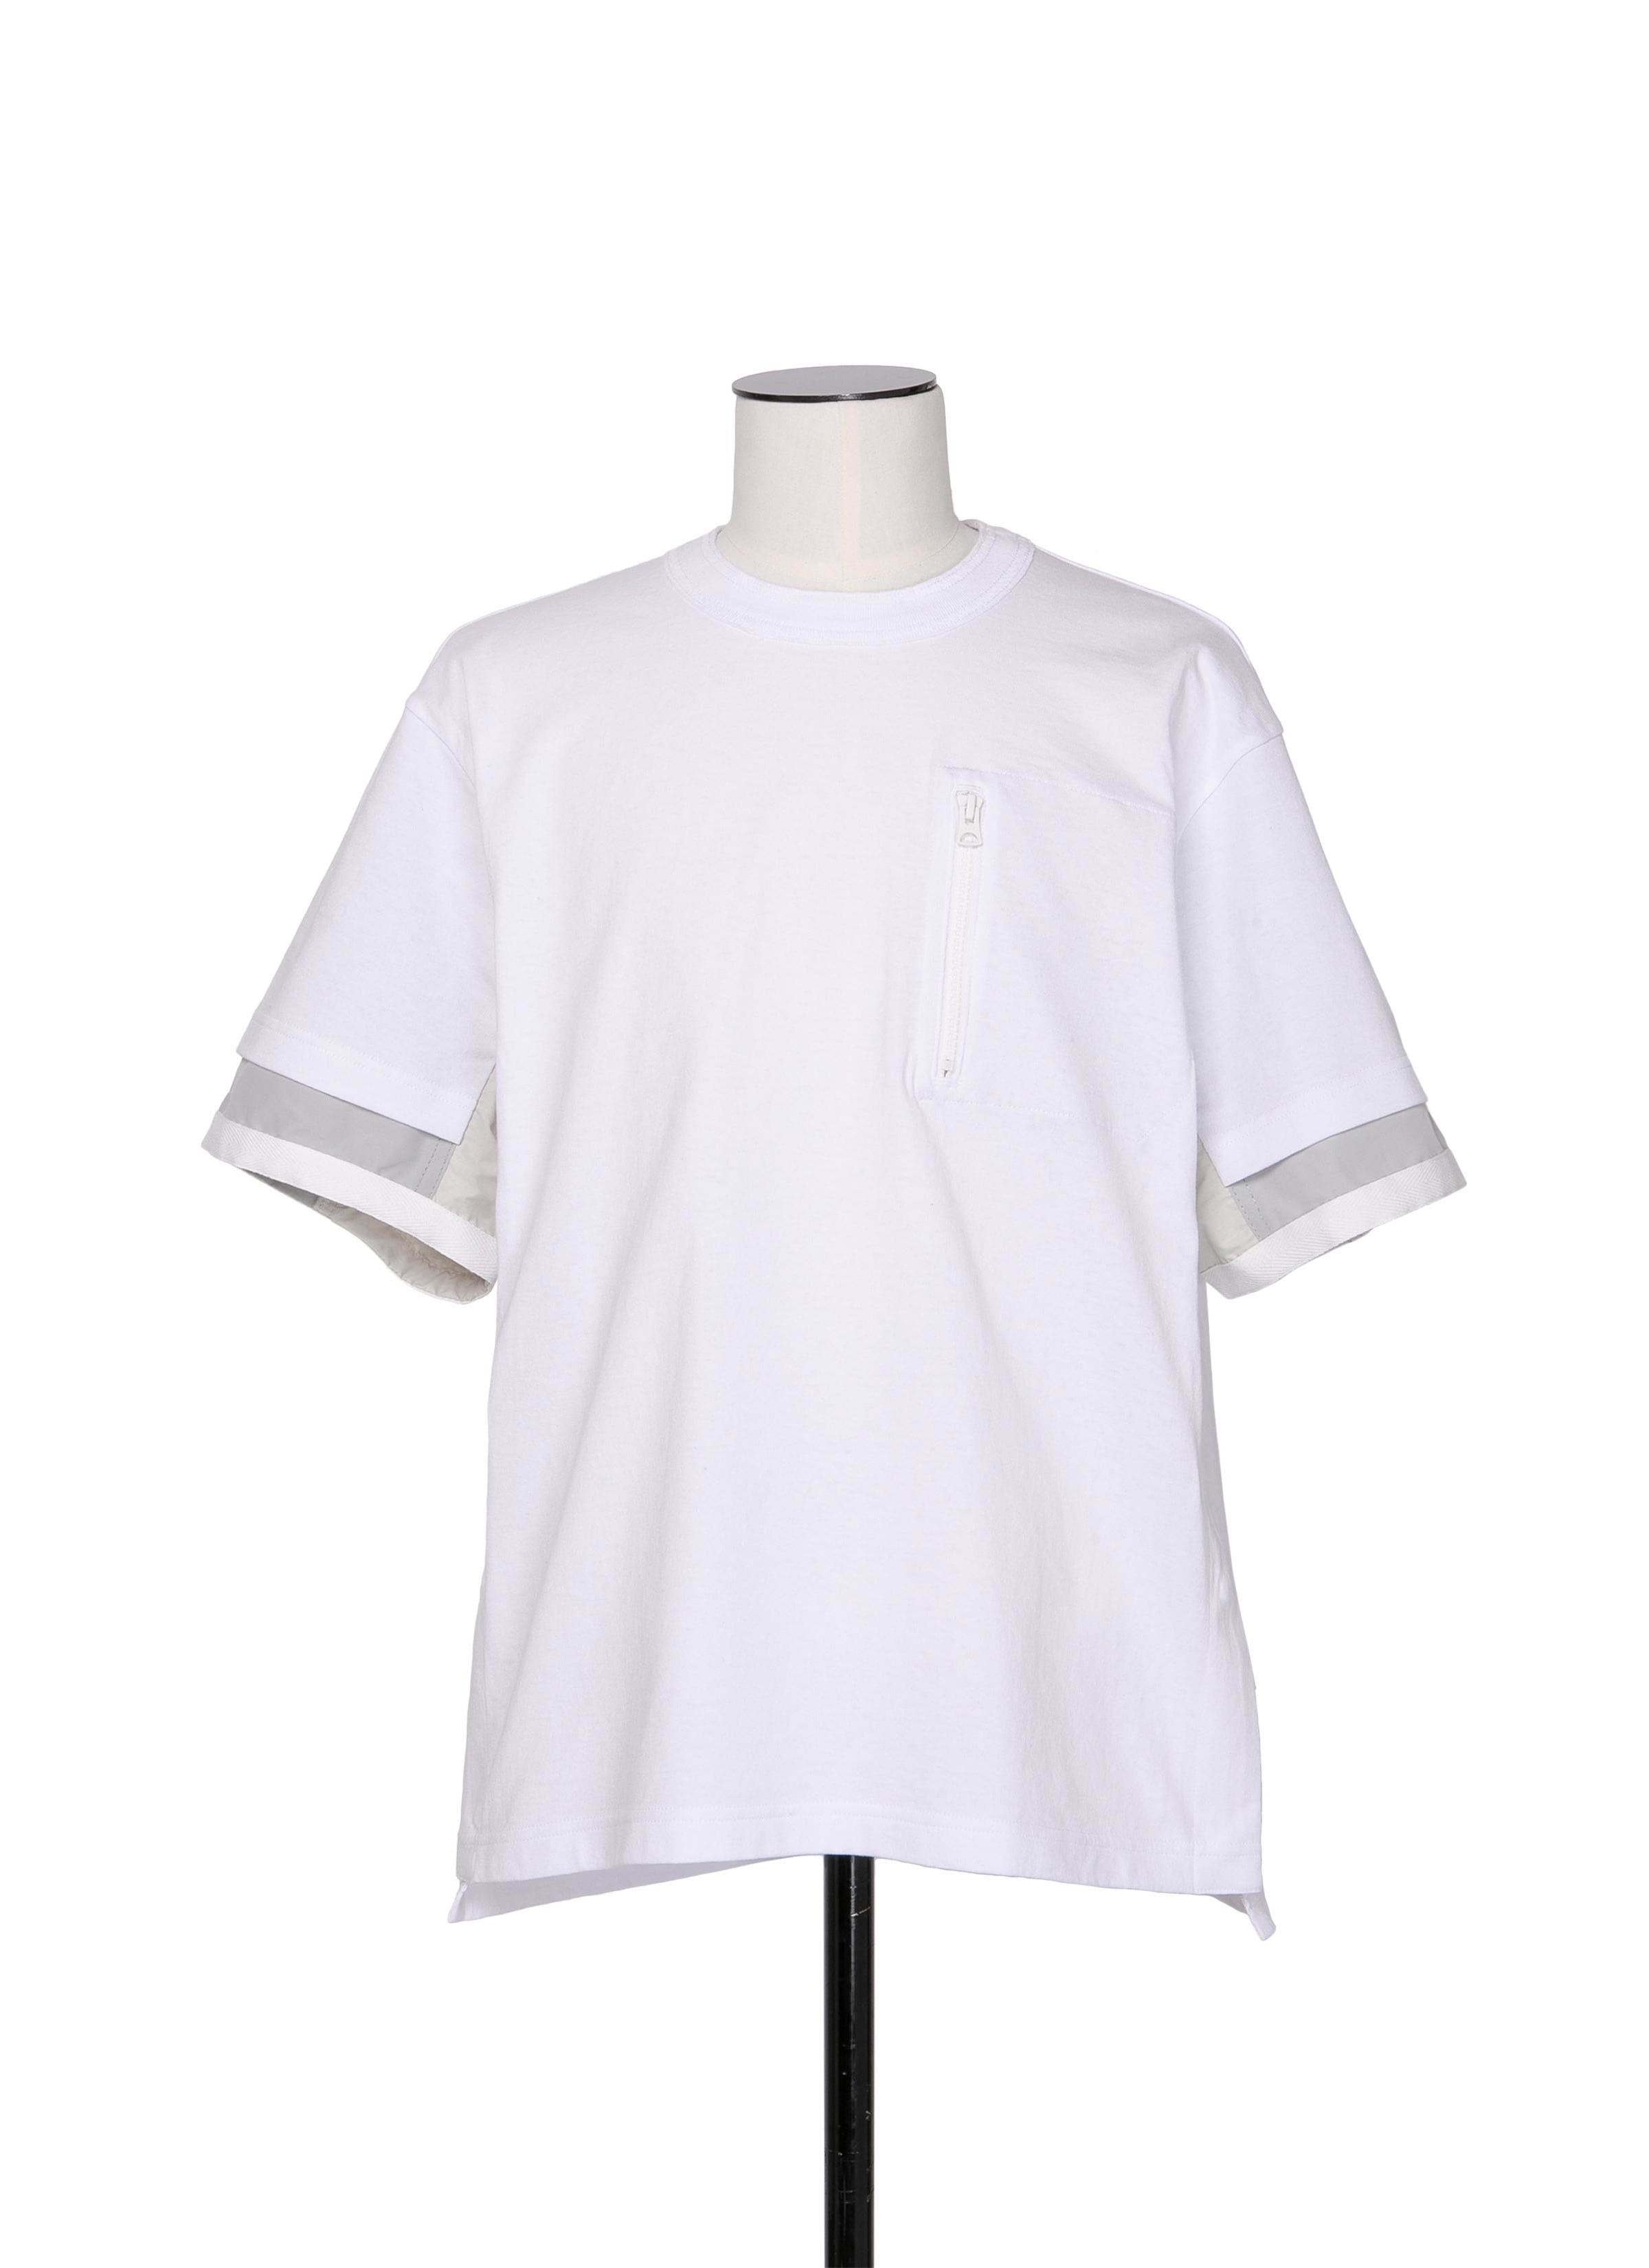 Sports Mix T-Shirt 詳細画像 WHITE 1